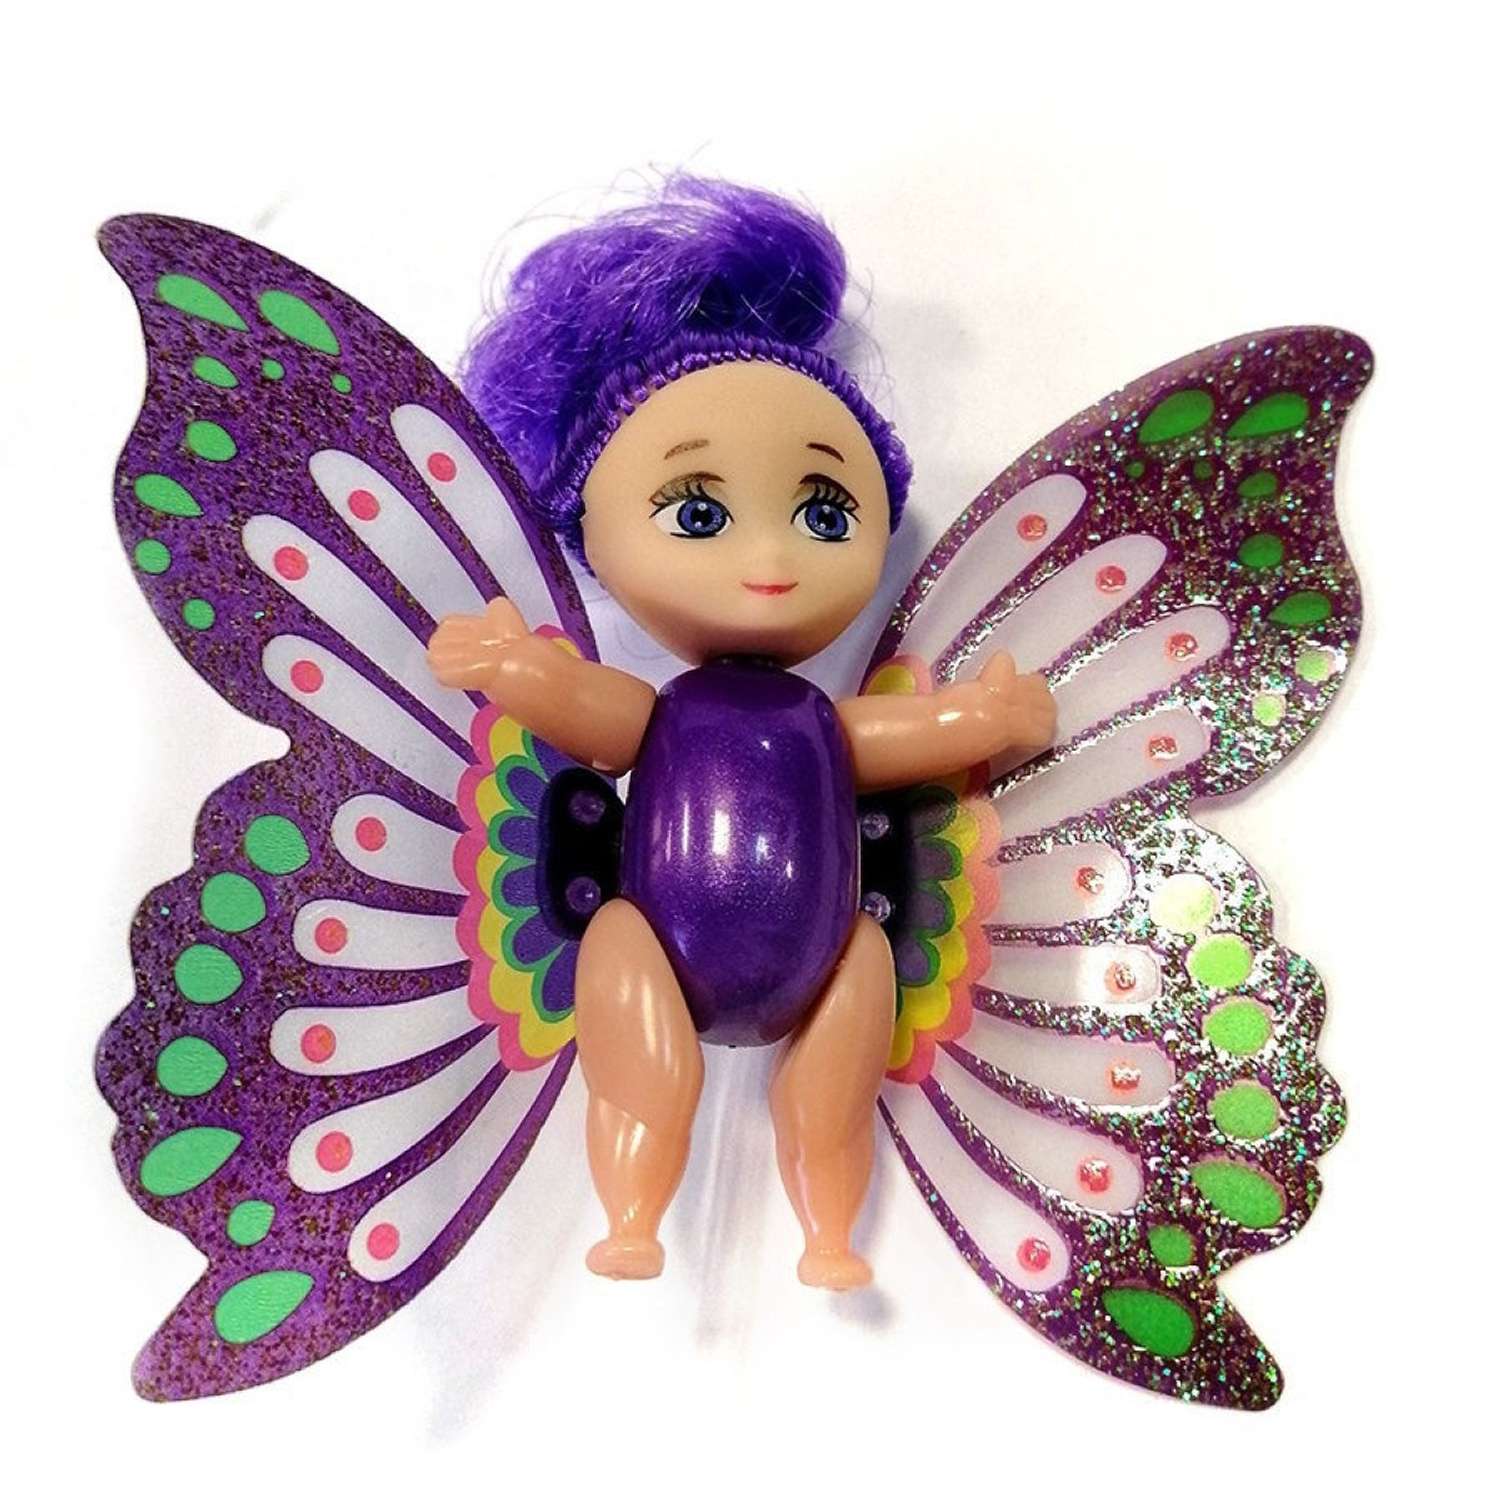 Мини кукла подвижная EstaBella Фея с машущими крылышками 7.5 см фиолетовая 89293 - фото 1